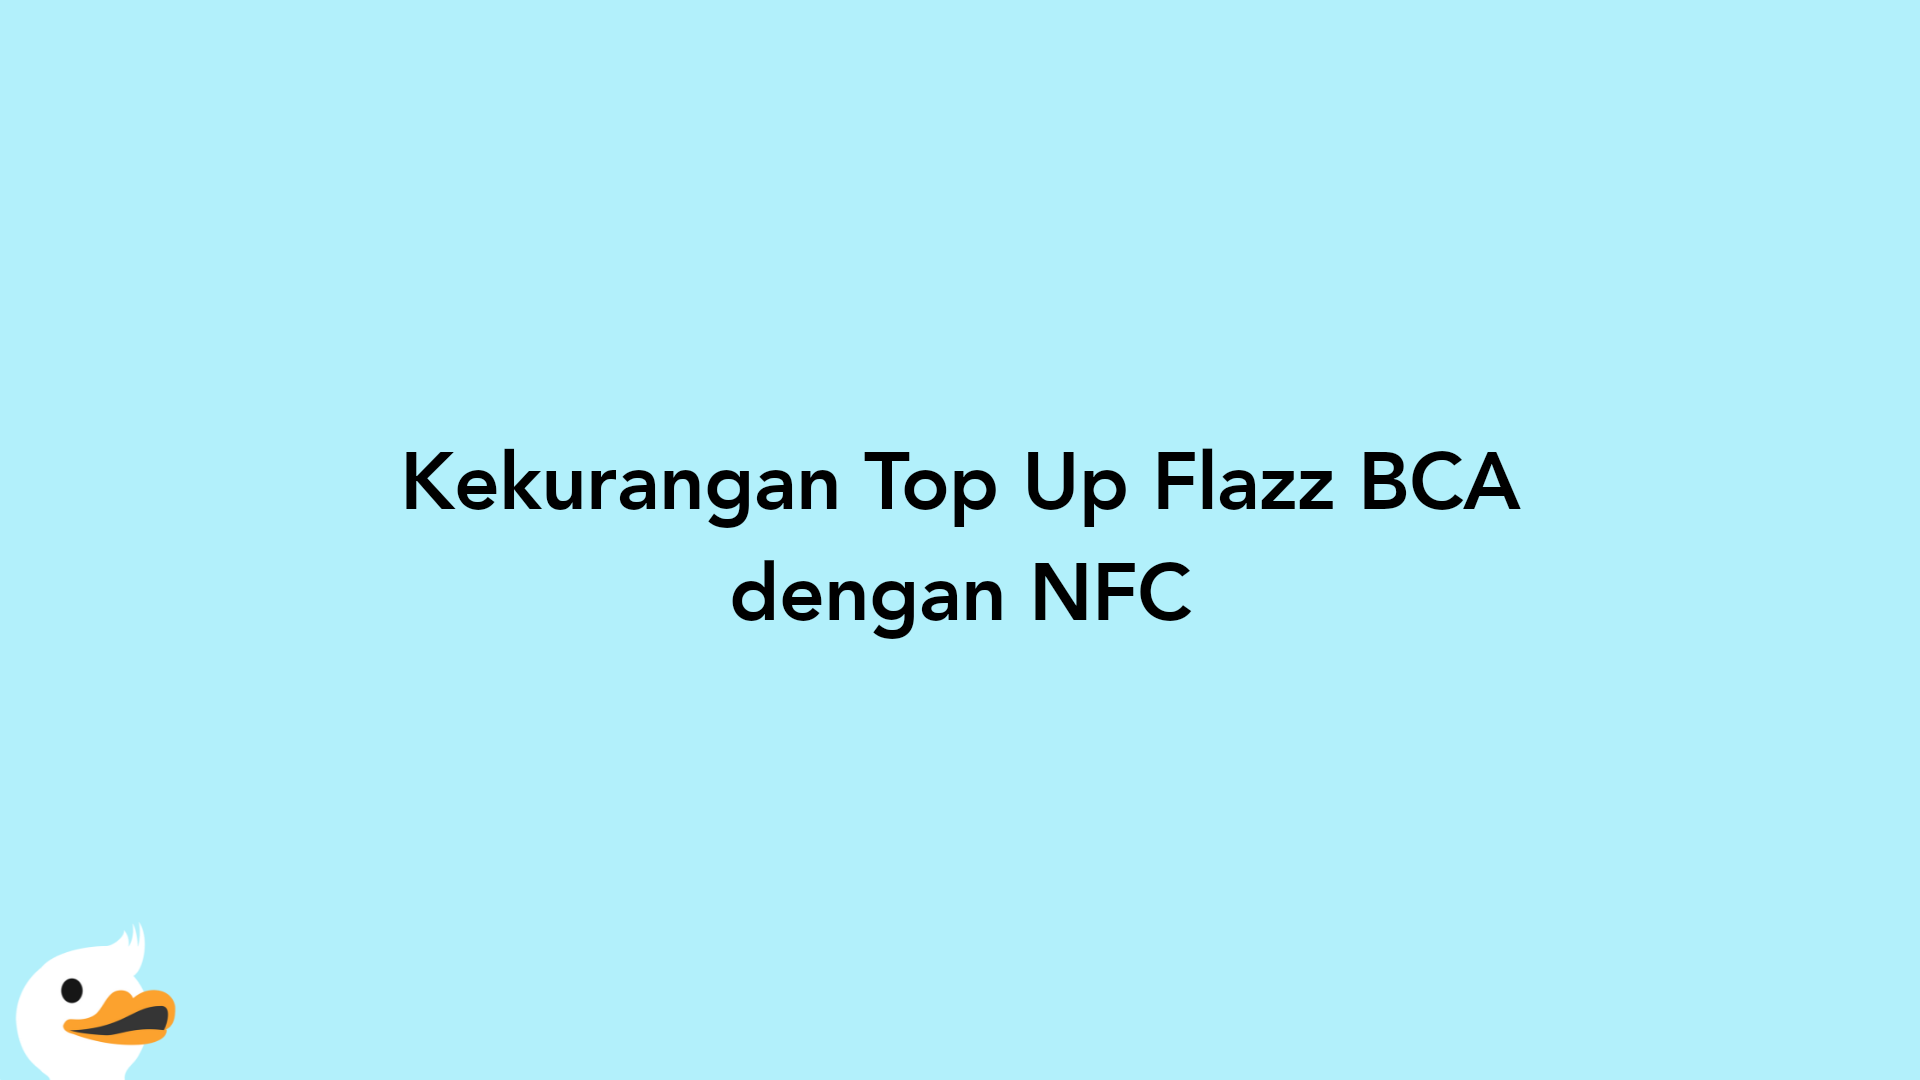 Kekurangan Top Up Flazz BCA dengan NFC